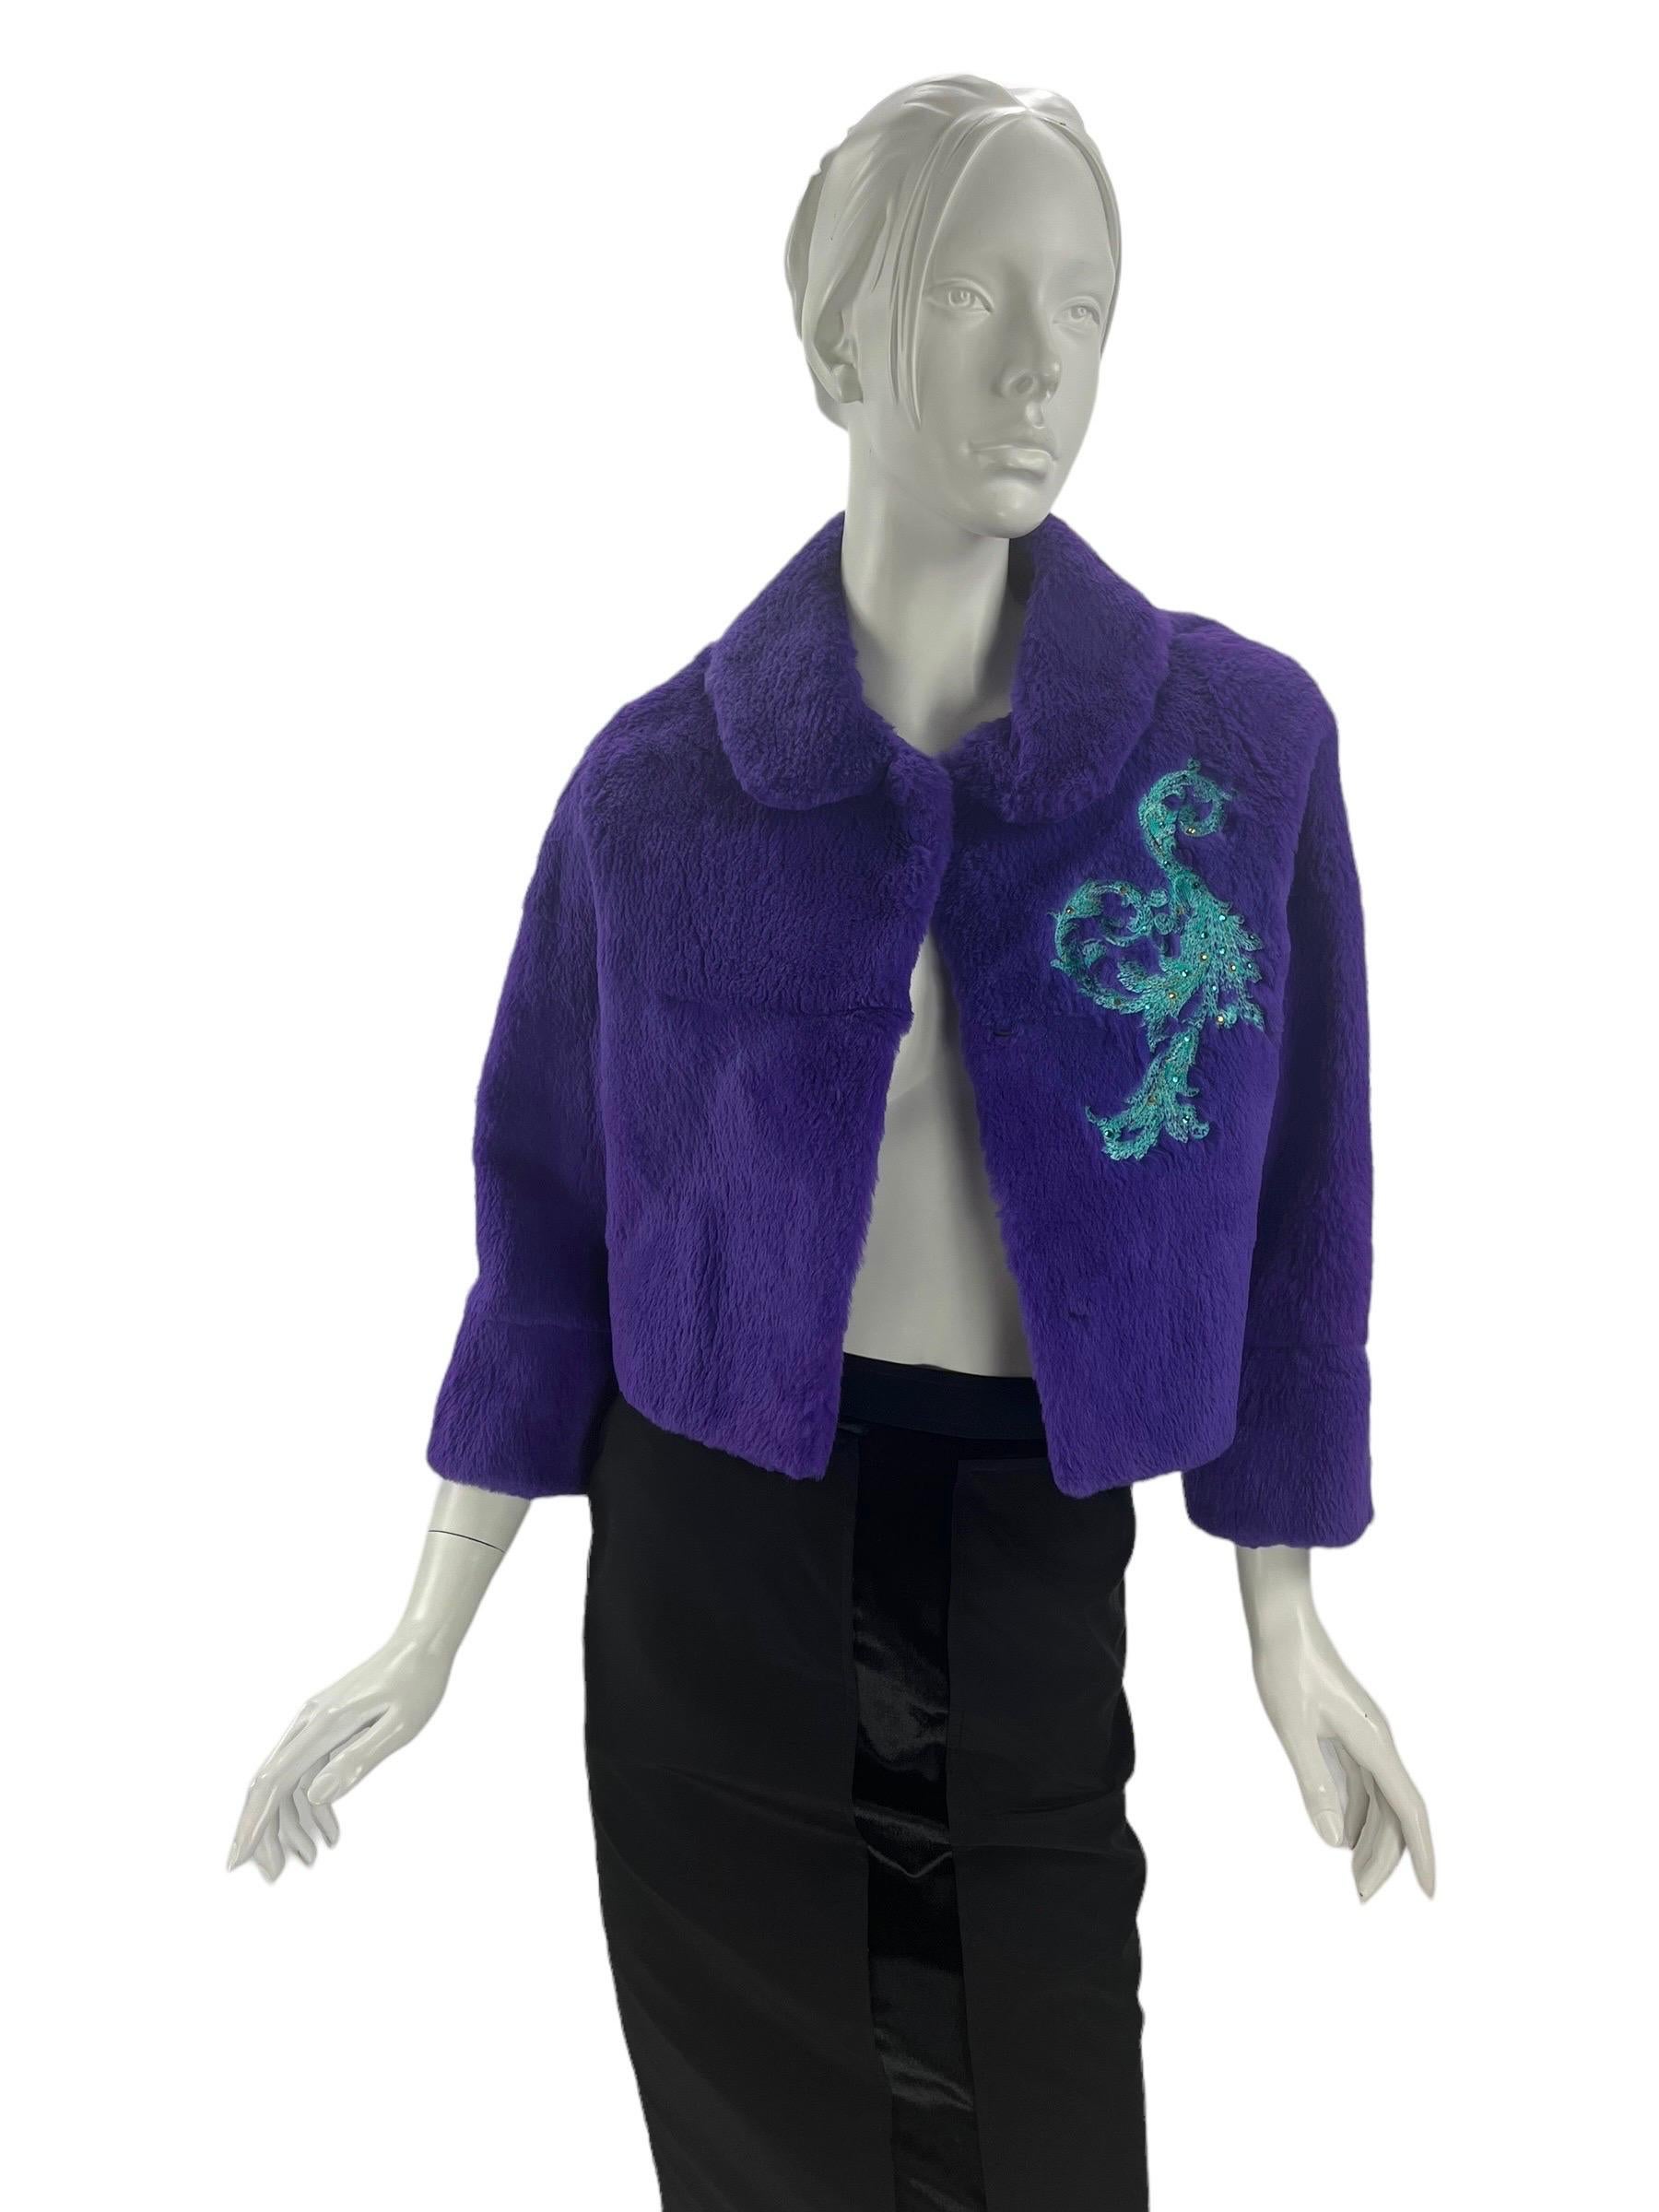 2001 Rare Vintage Versace Sample Jacket.
Fourrure de lapin avec broderie ornée de cristaux.
Taille S
Manches 3/4, longueur totale 20